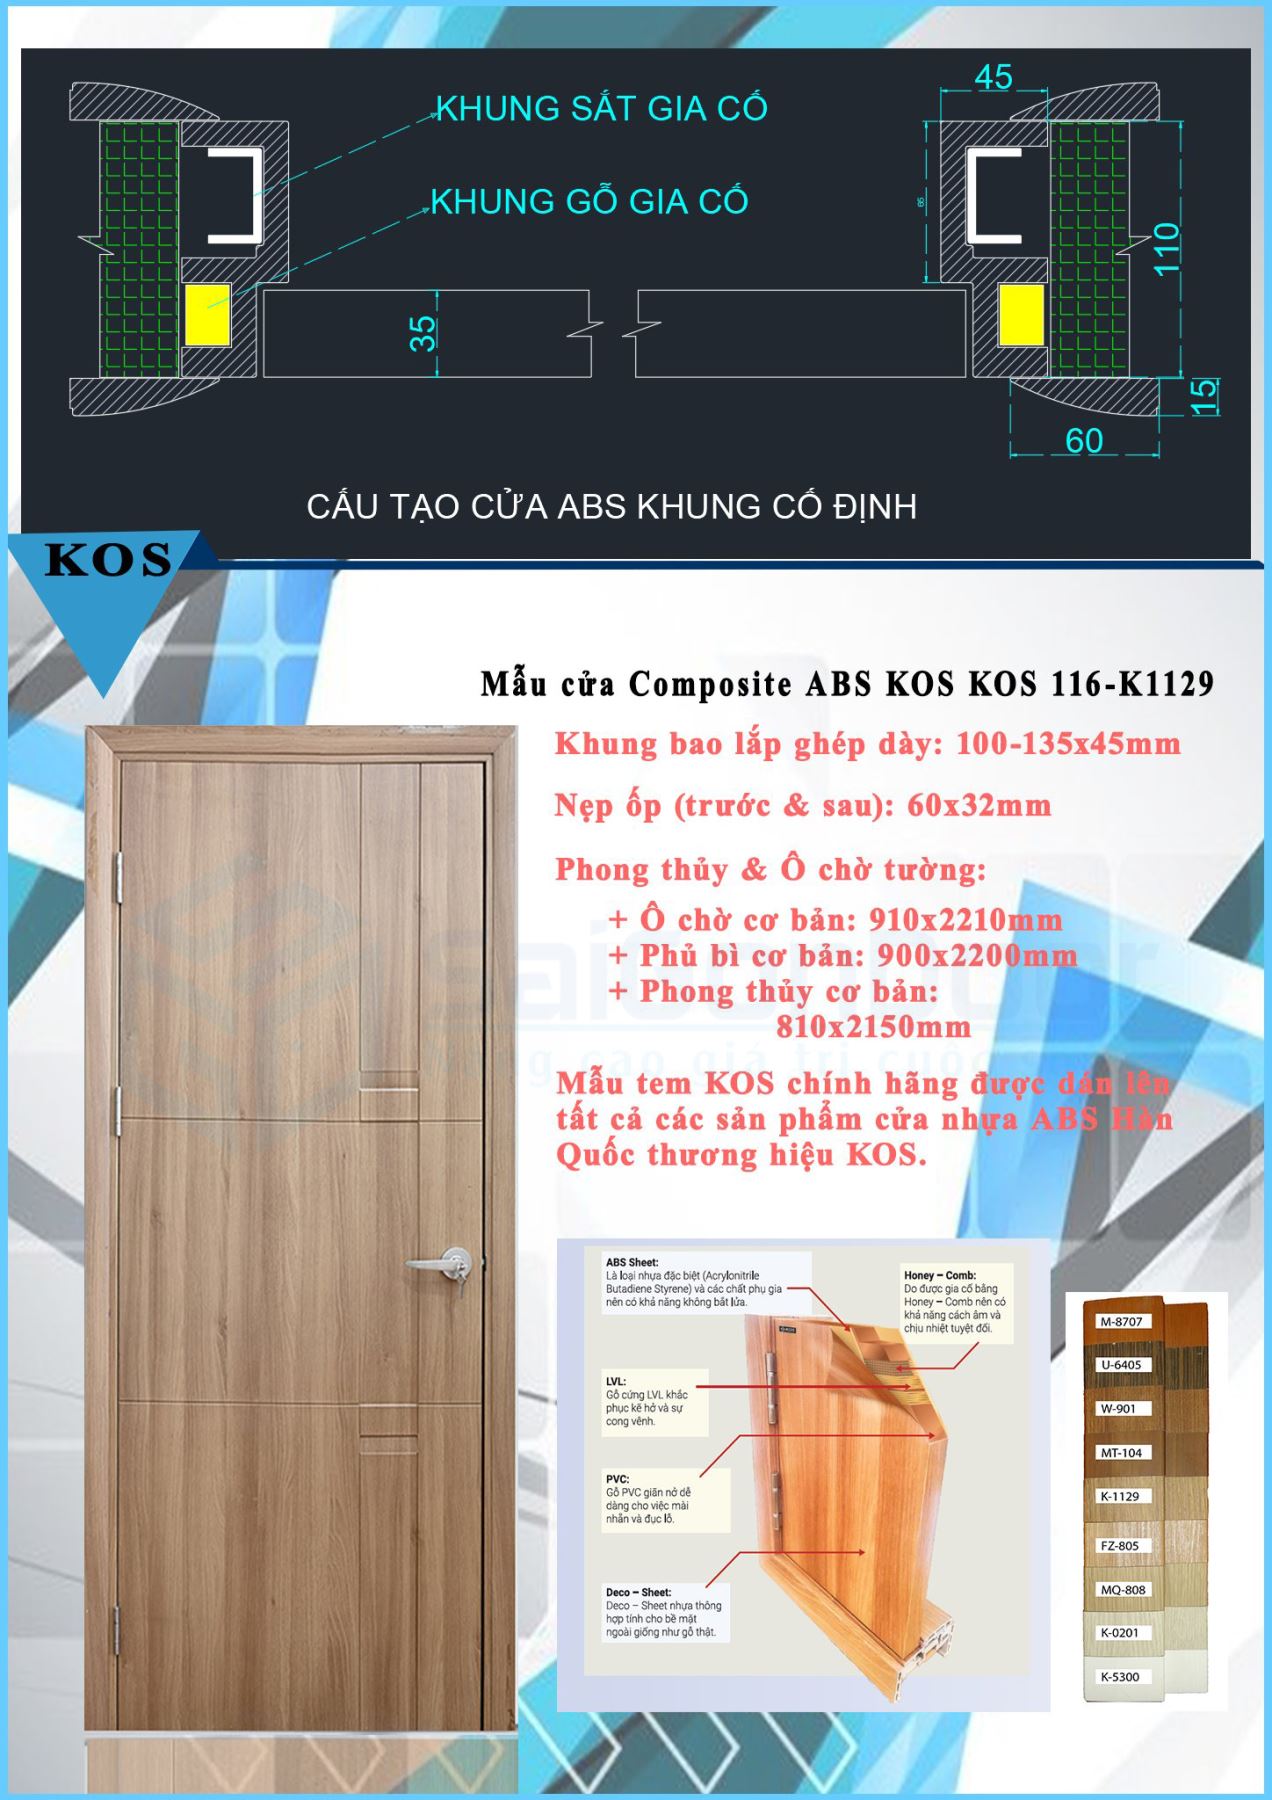 Hình cánh, thông số kĩ thuật và bảng màu cửa nhựa ABS Hàn Quốc